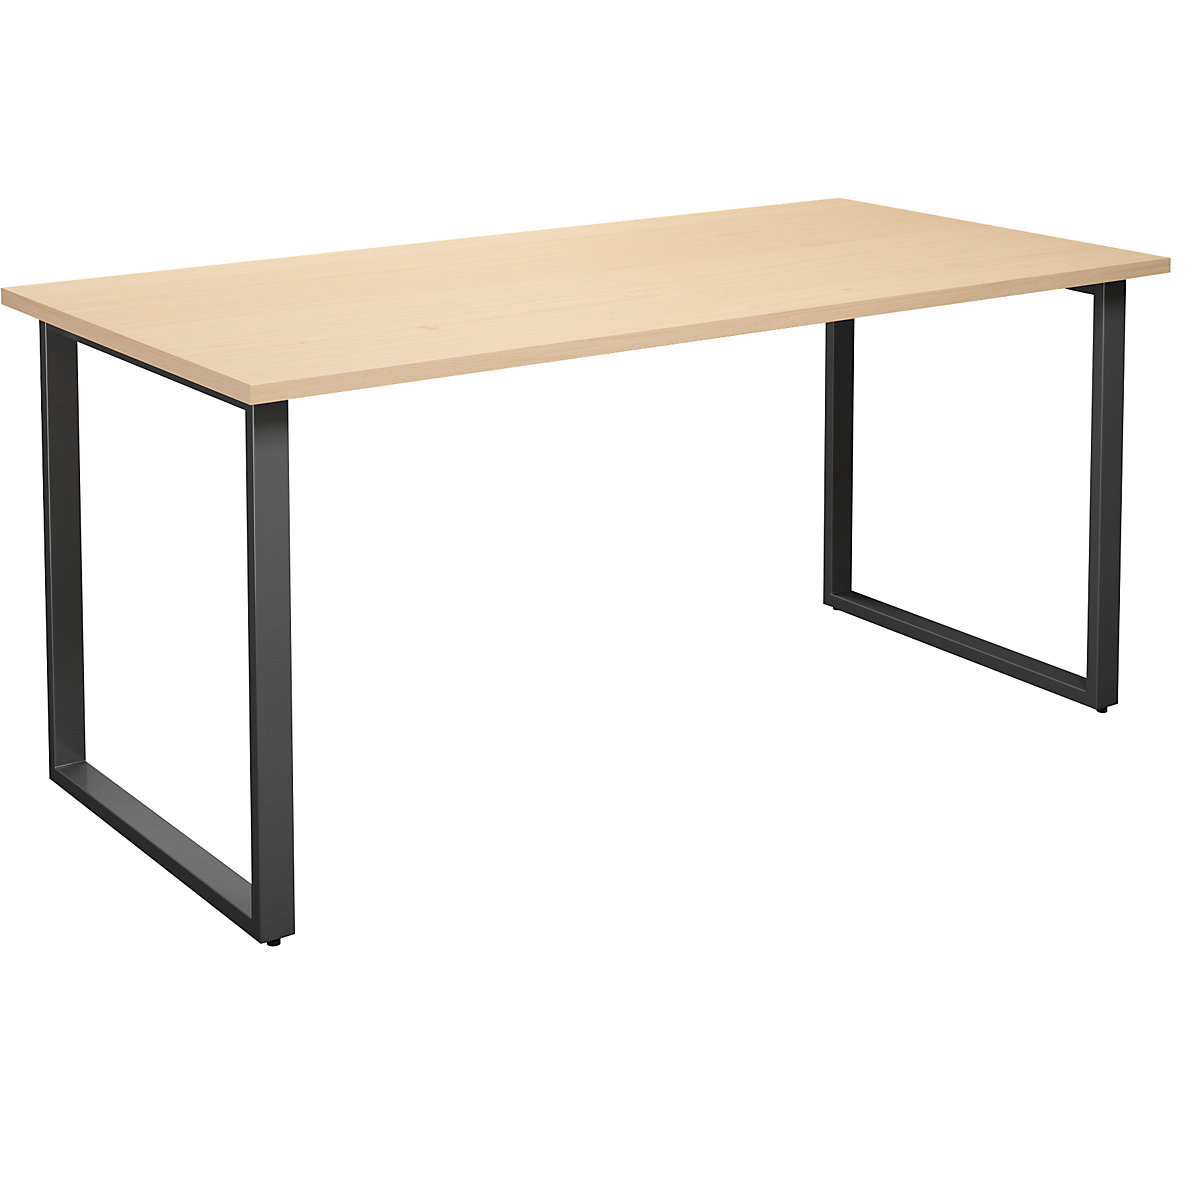 DUO-O multi-purpose desk, straight tabletop, WxD 1600 x 800 mm, birch, black-4